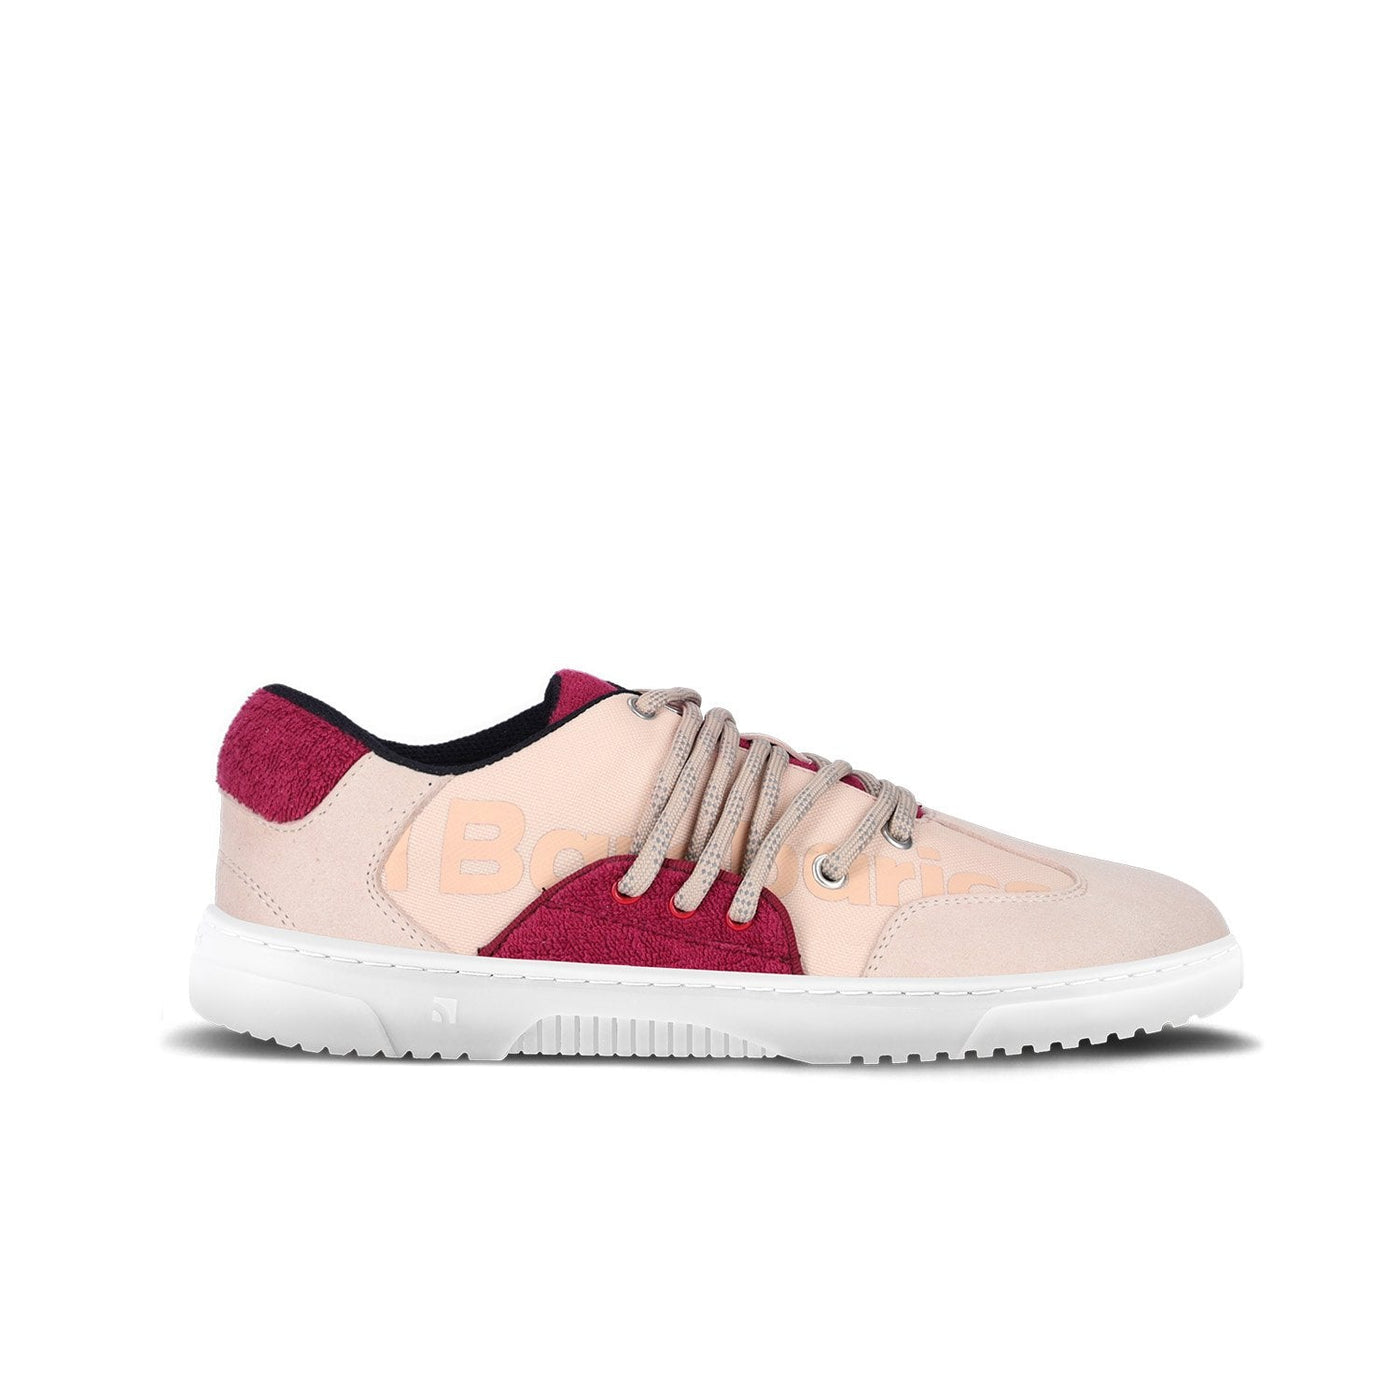 Barebarics Vibe Sneaker - Beige & Red 36 - Like New